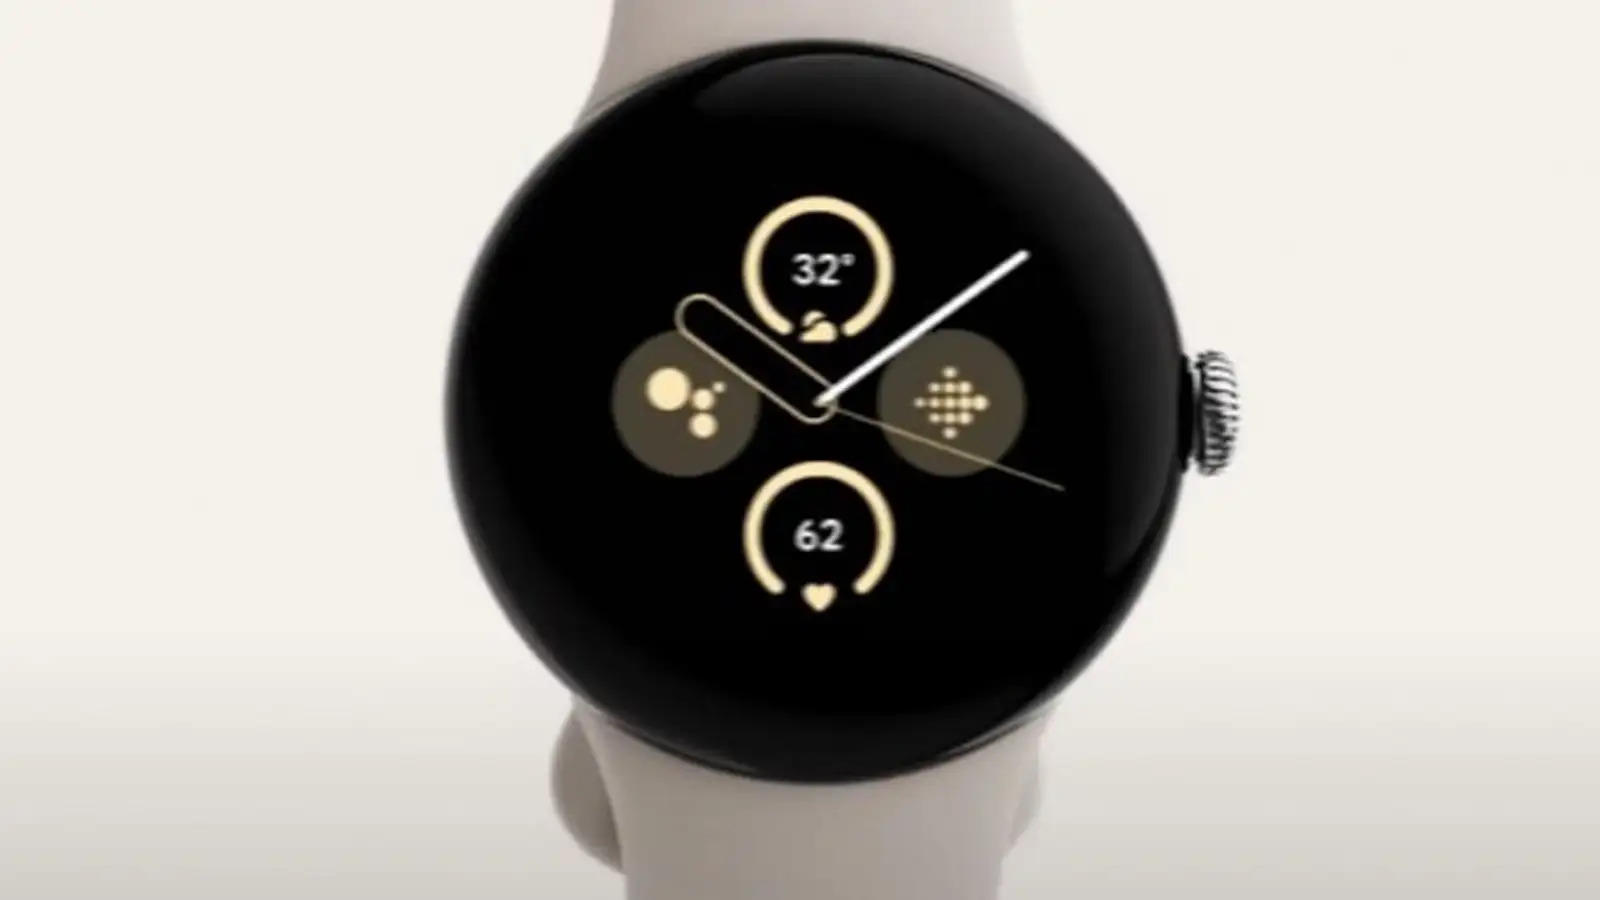 जल्द ही भारत में लॉन्च होने वाली है Google Pixel Watch 2, फ्लिपकार्ट पर सेल के लिए होगी उपलब्ध